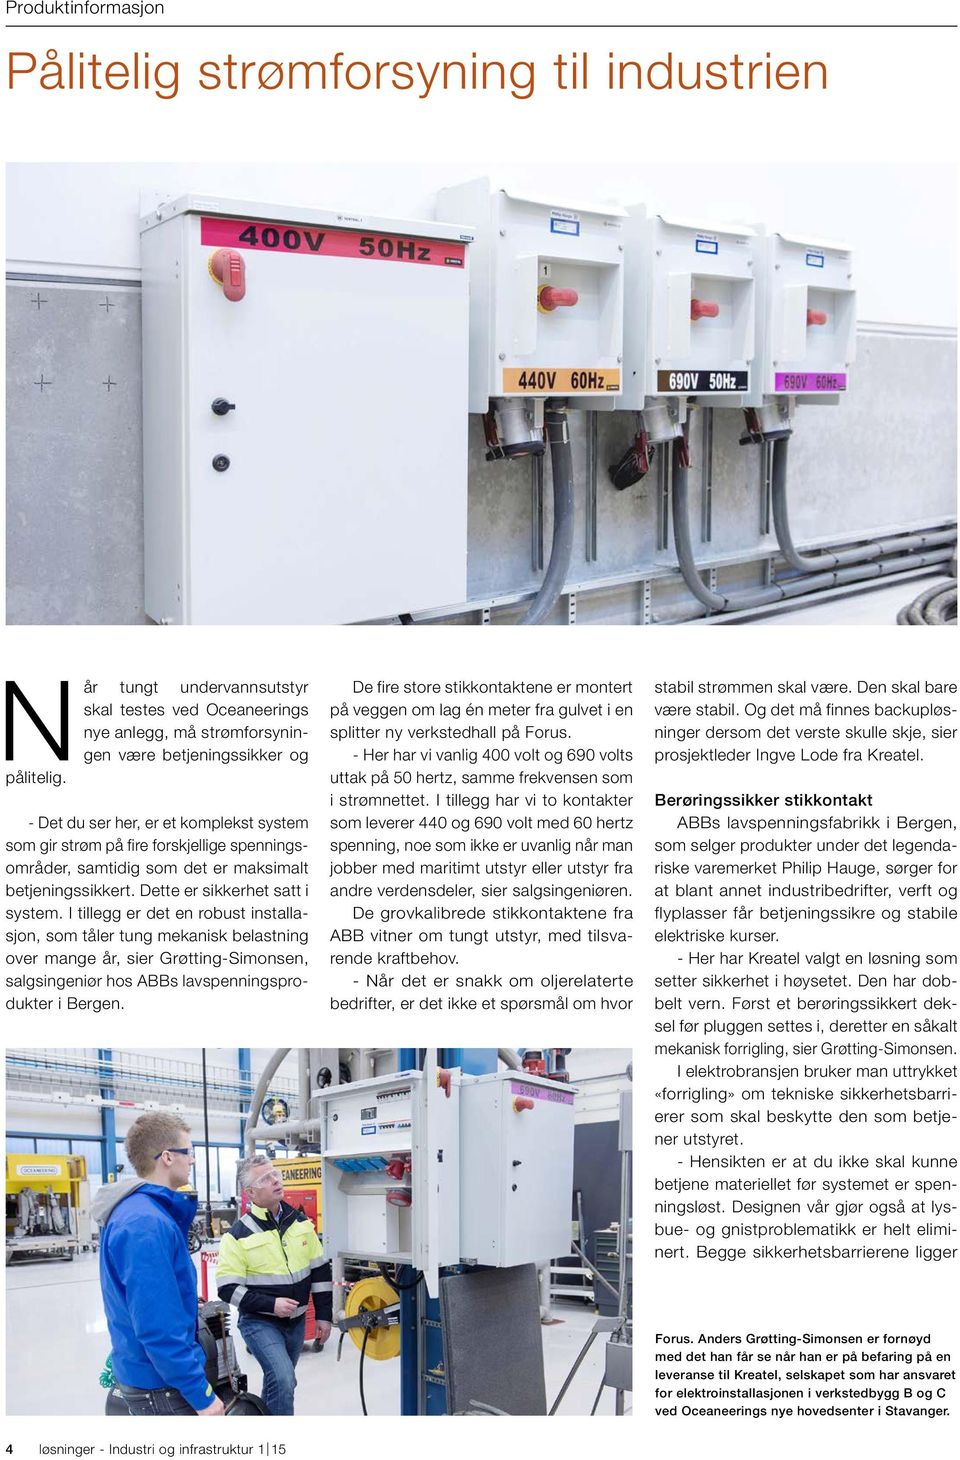 I tillegg er det en robust installasjon, som tåler tung mekanisk belastning over mange år, sier Grøtting-Simonsen, salgsingeniør hos ABBs lavspenningsprodukter i Bergen.